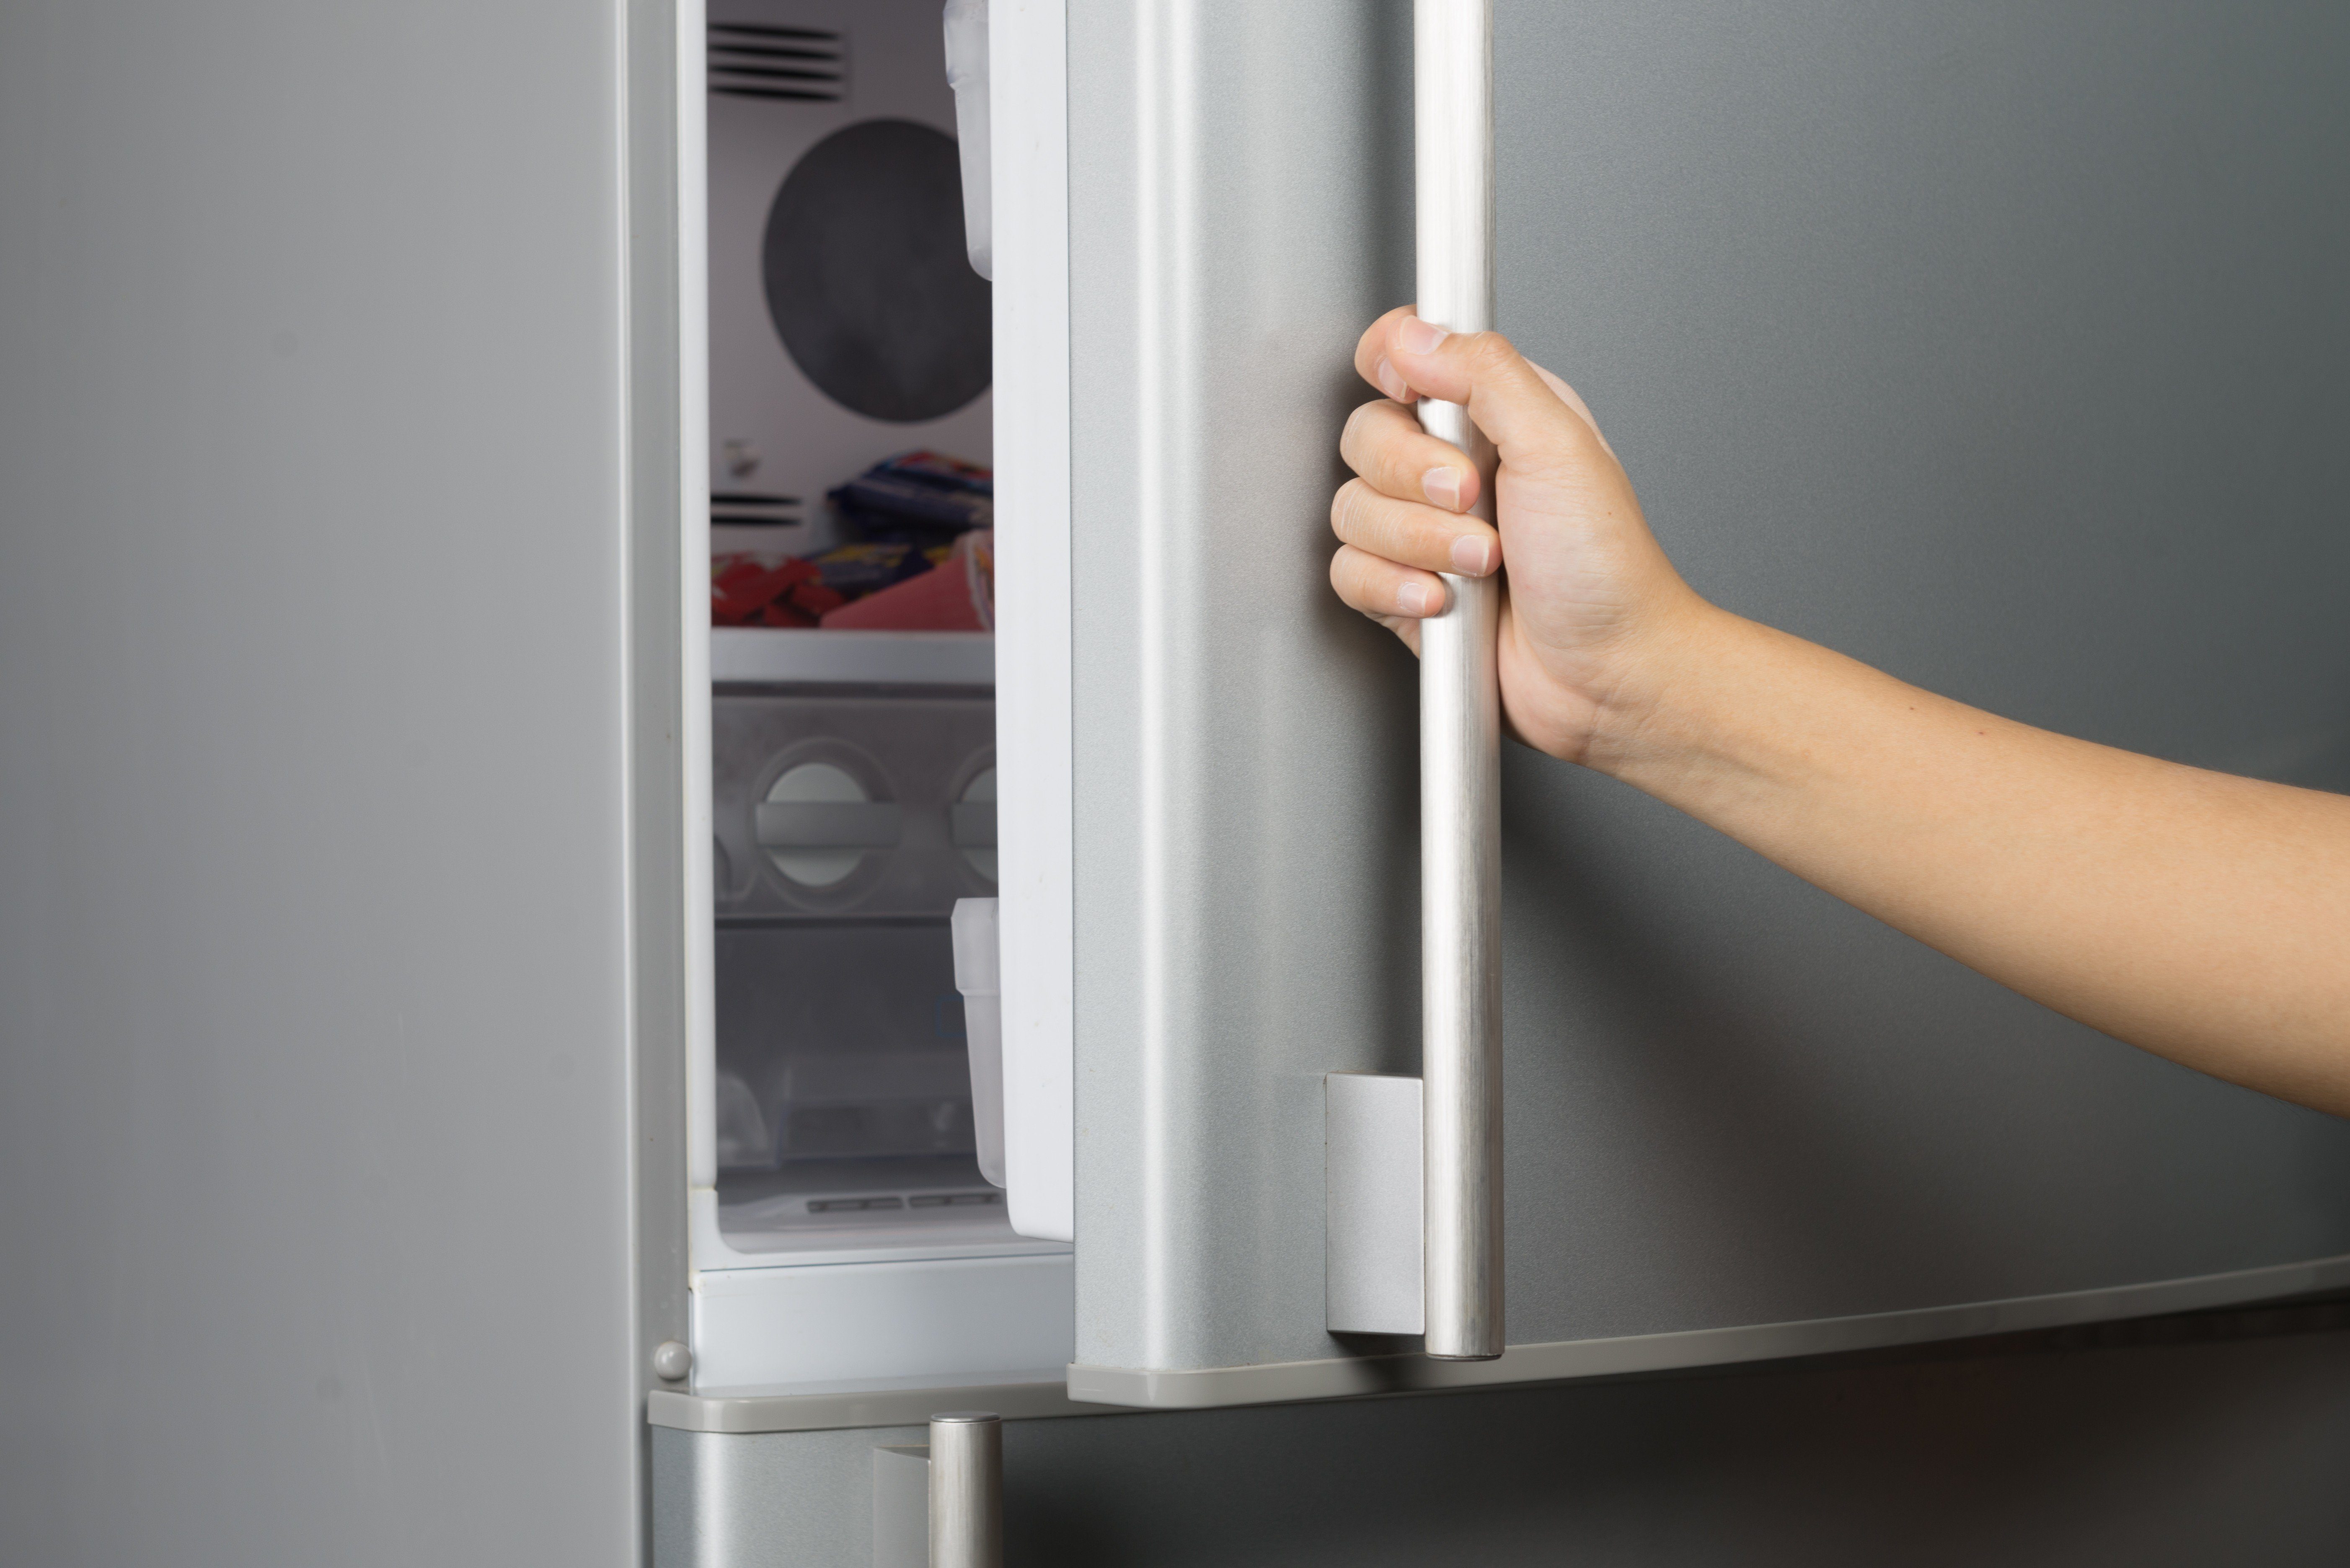 Refrigerator Freezer Garage Kit Installation Video - When a Garage